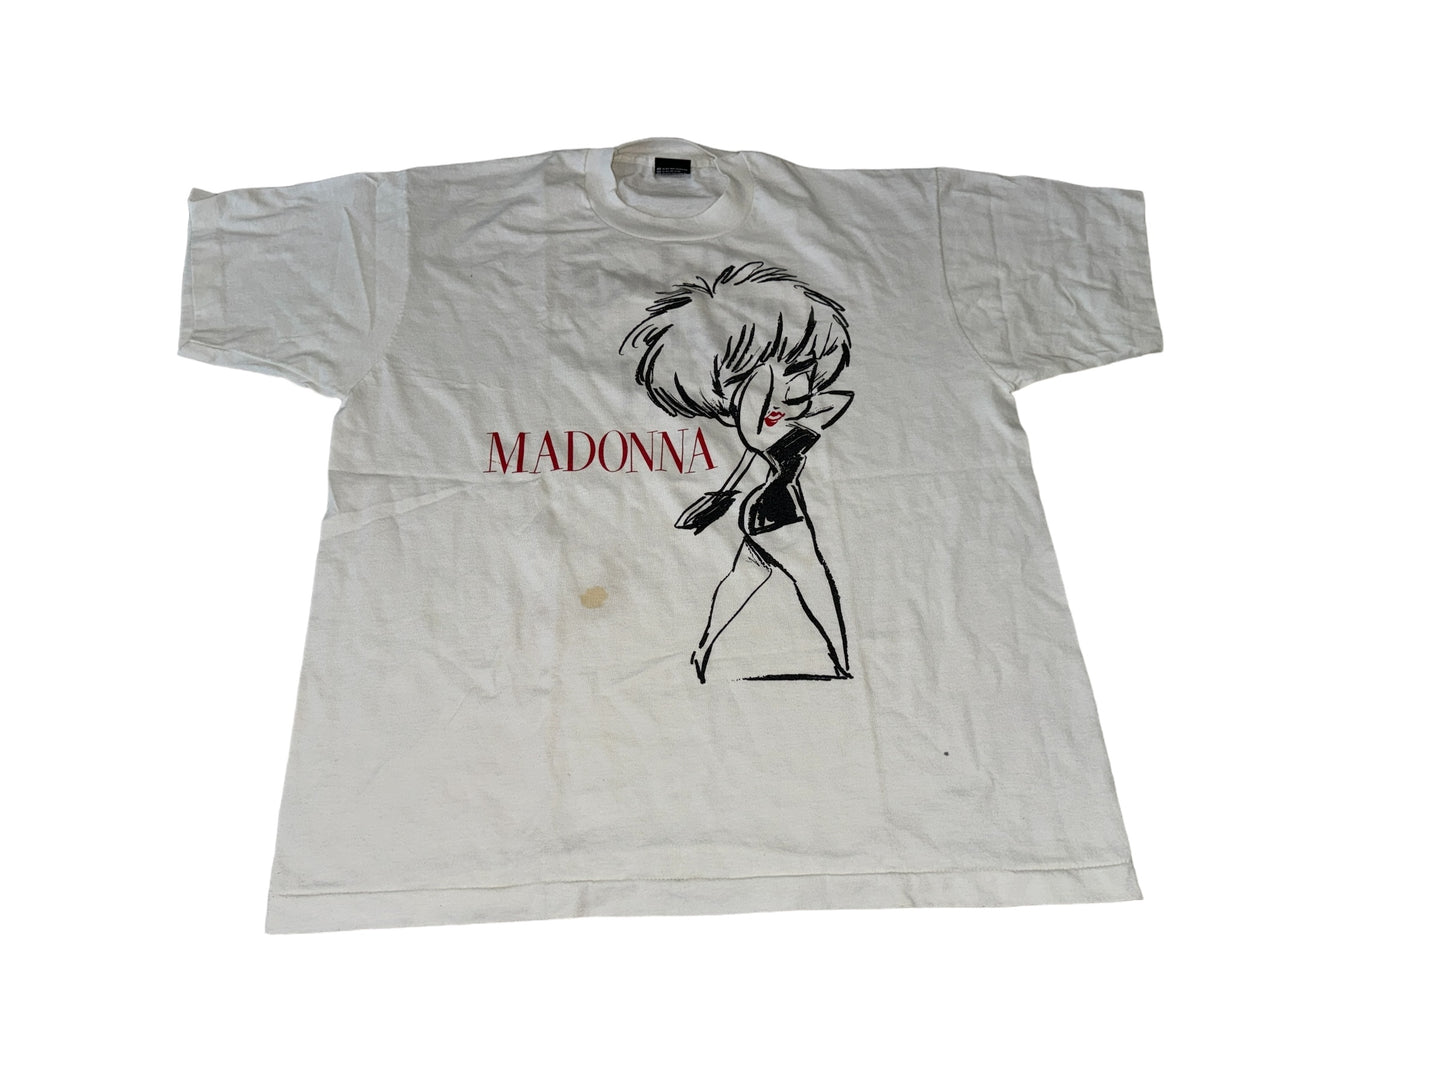 VIntage 90's Madonna T-Shirt